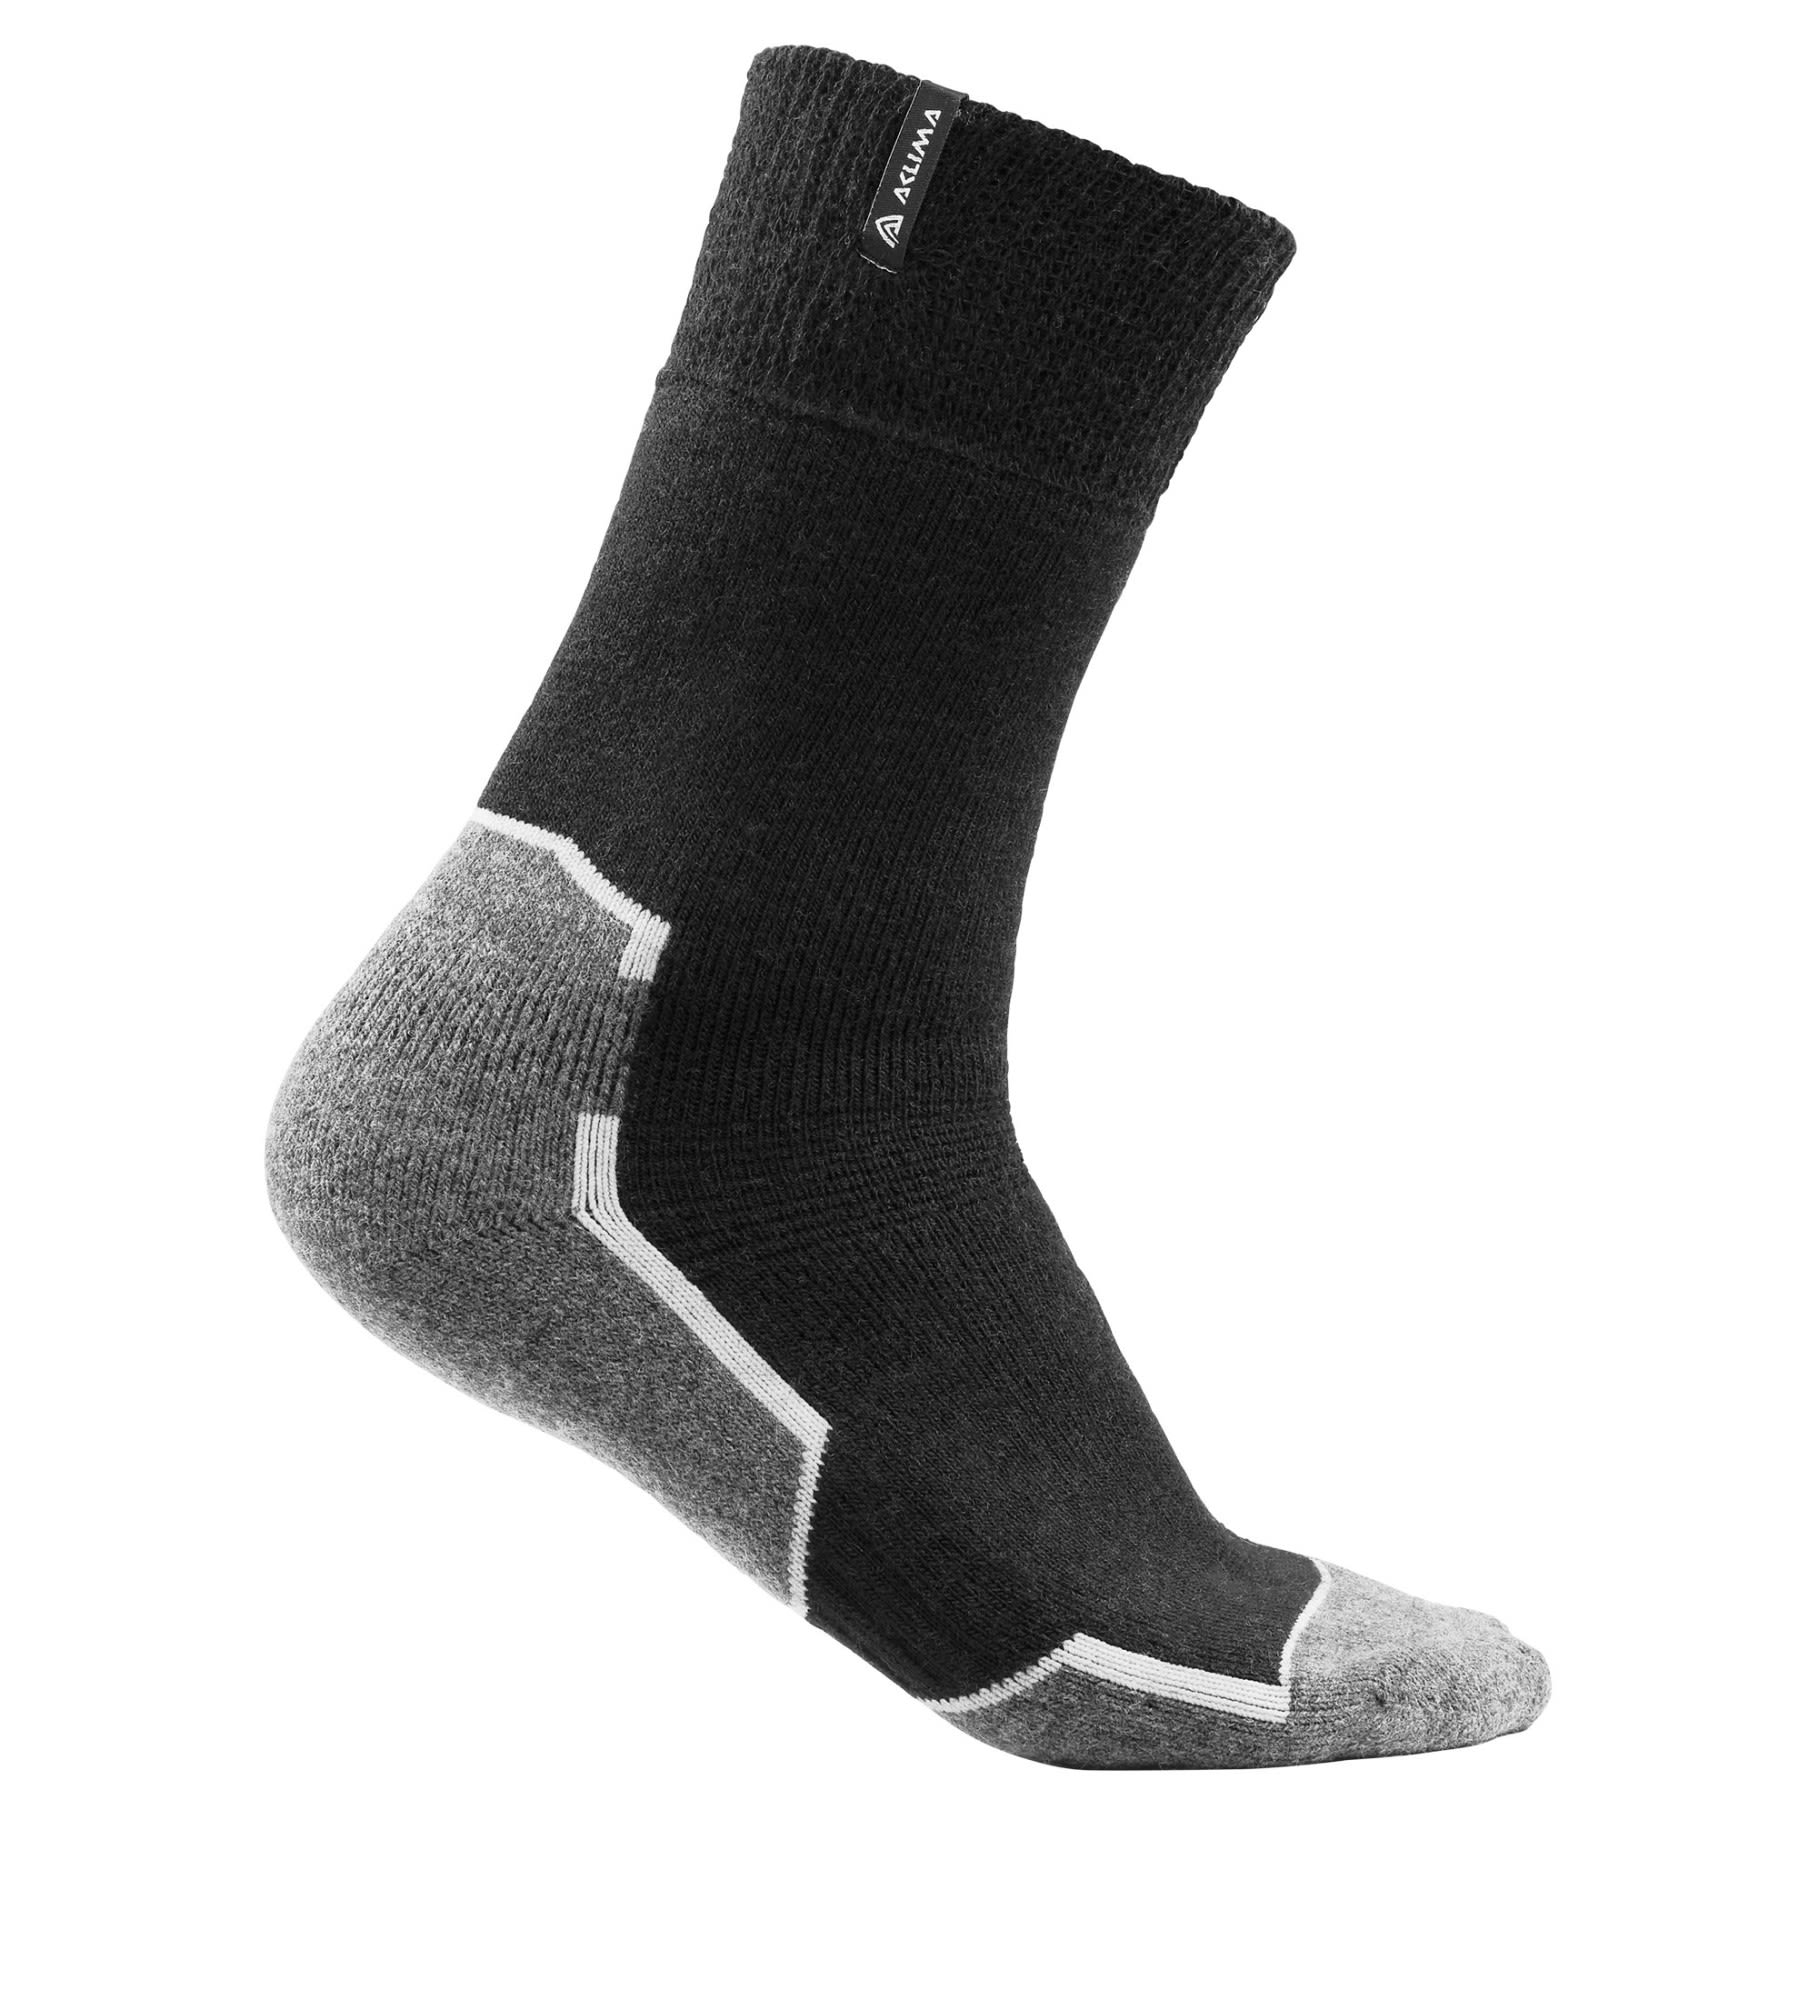 Aclima Warmwool Socks Schwarz | Größe 36 - 39 |  Kompressionssocken